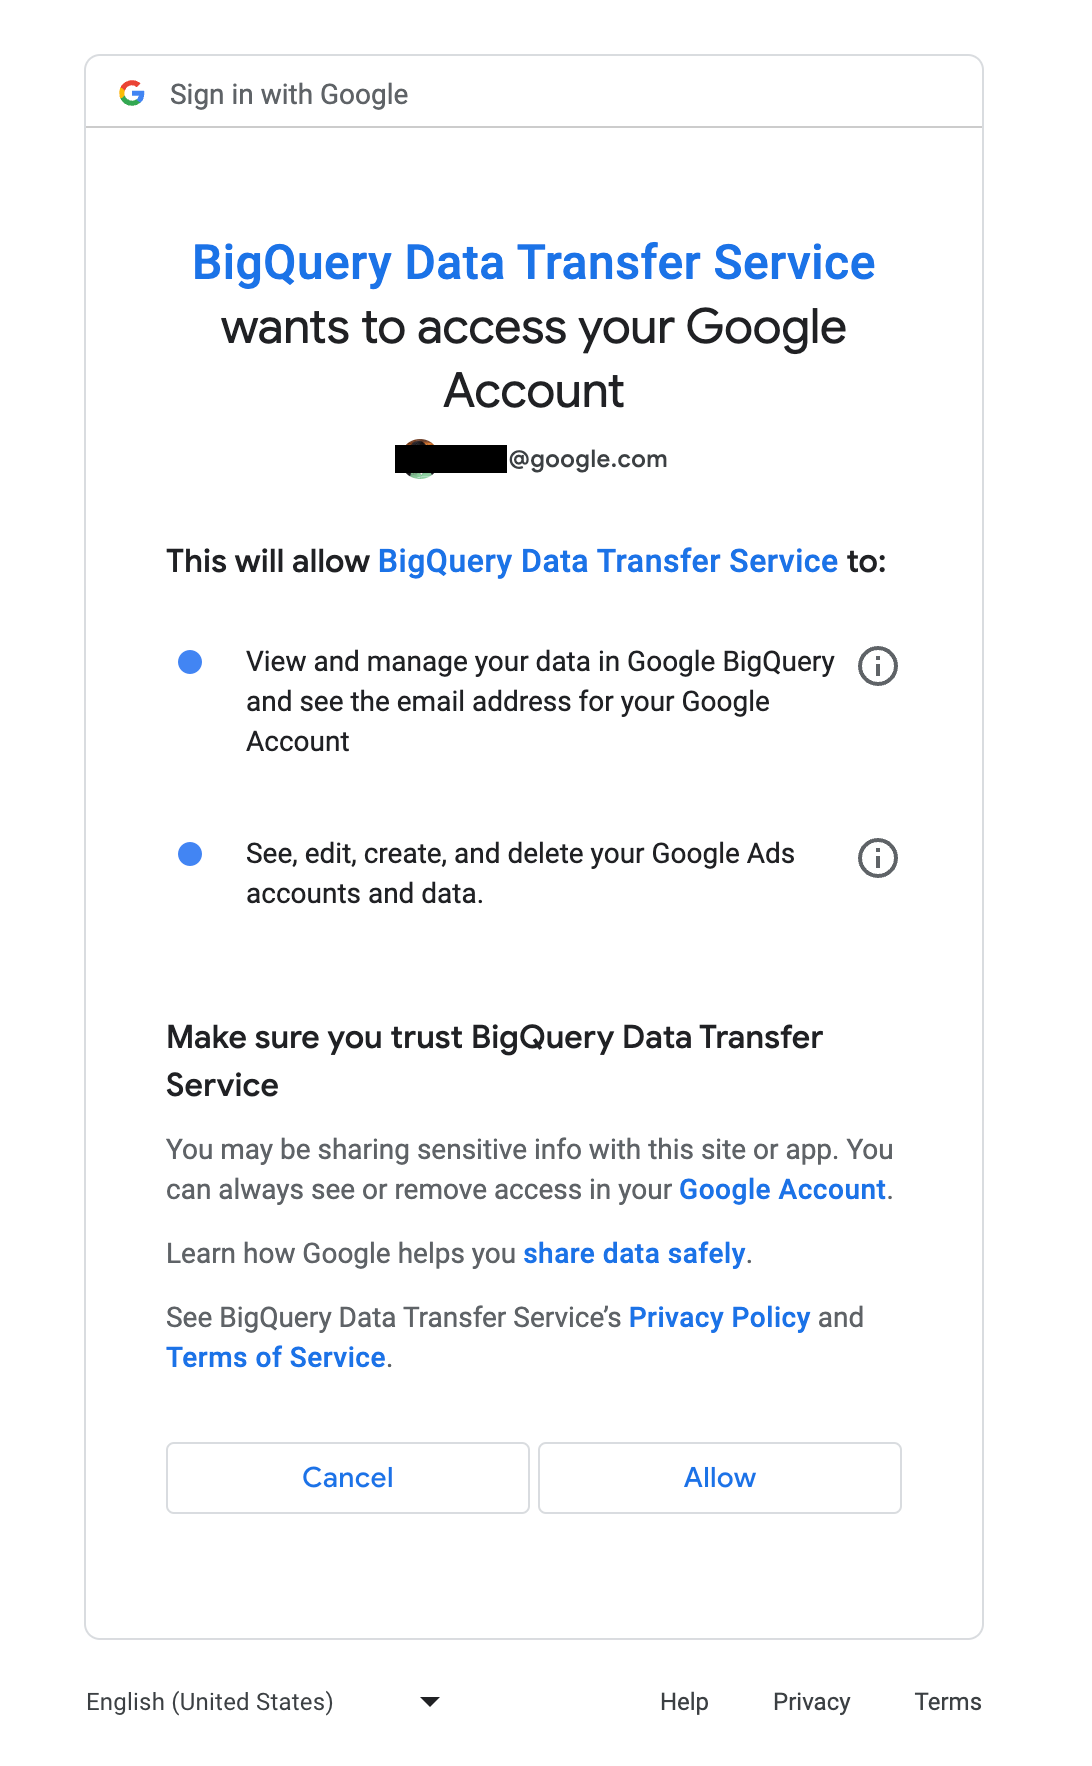 Permite que el Servicio de transferencia de datos de BigQuery acceda a Google Ads.